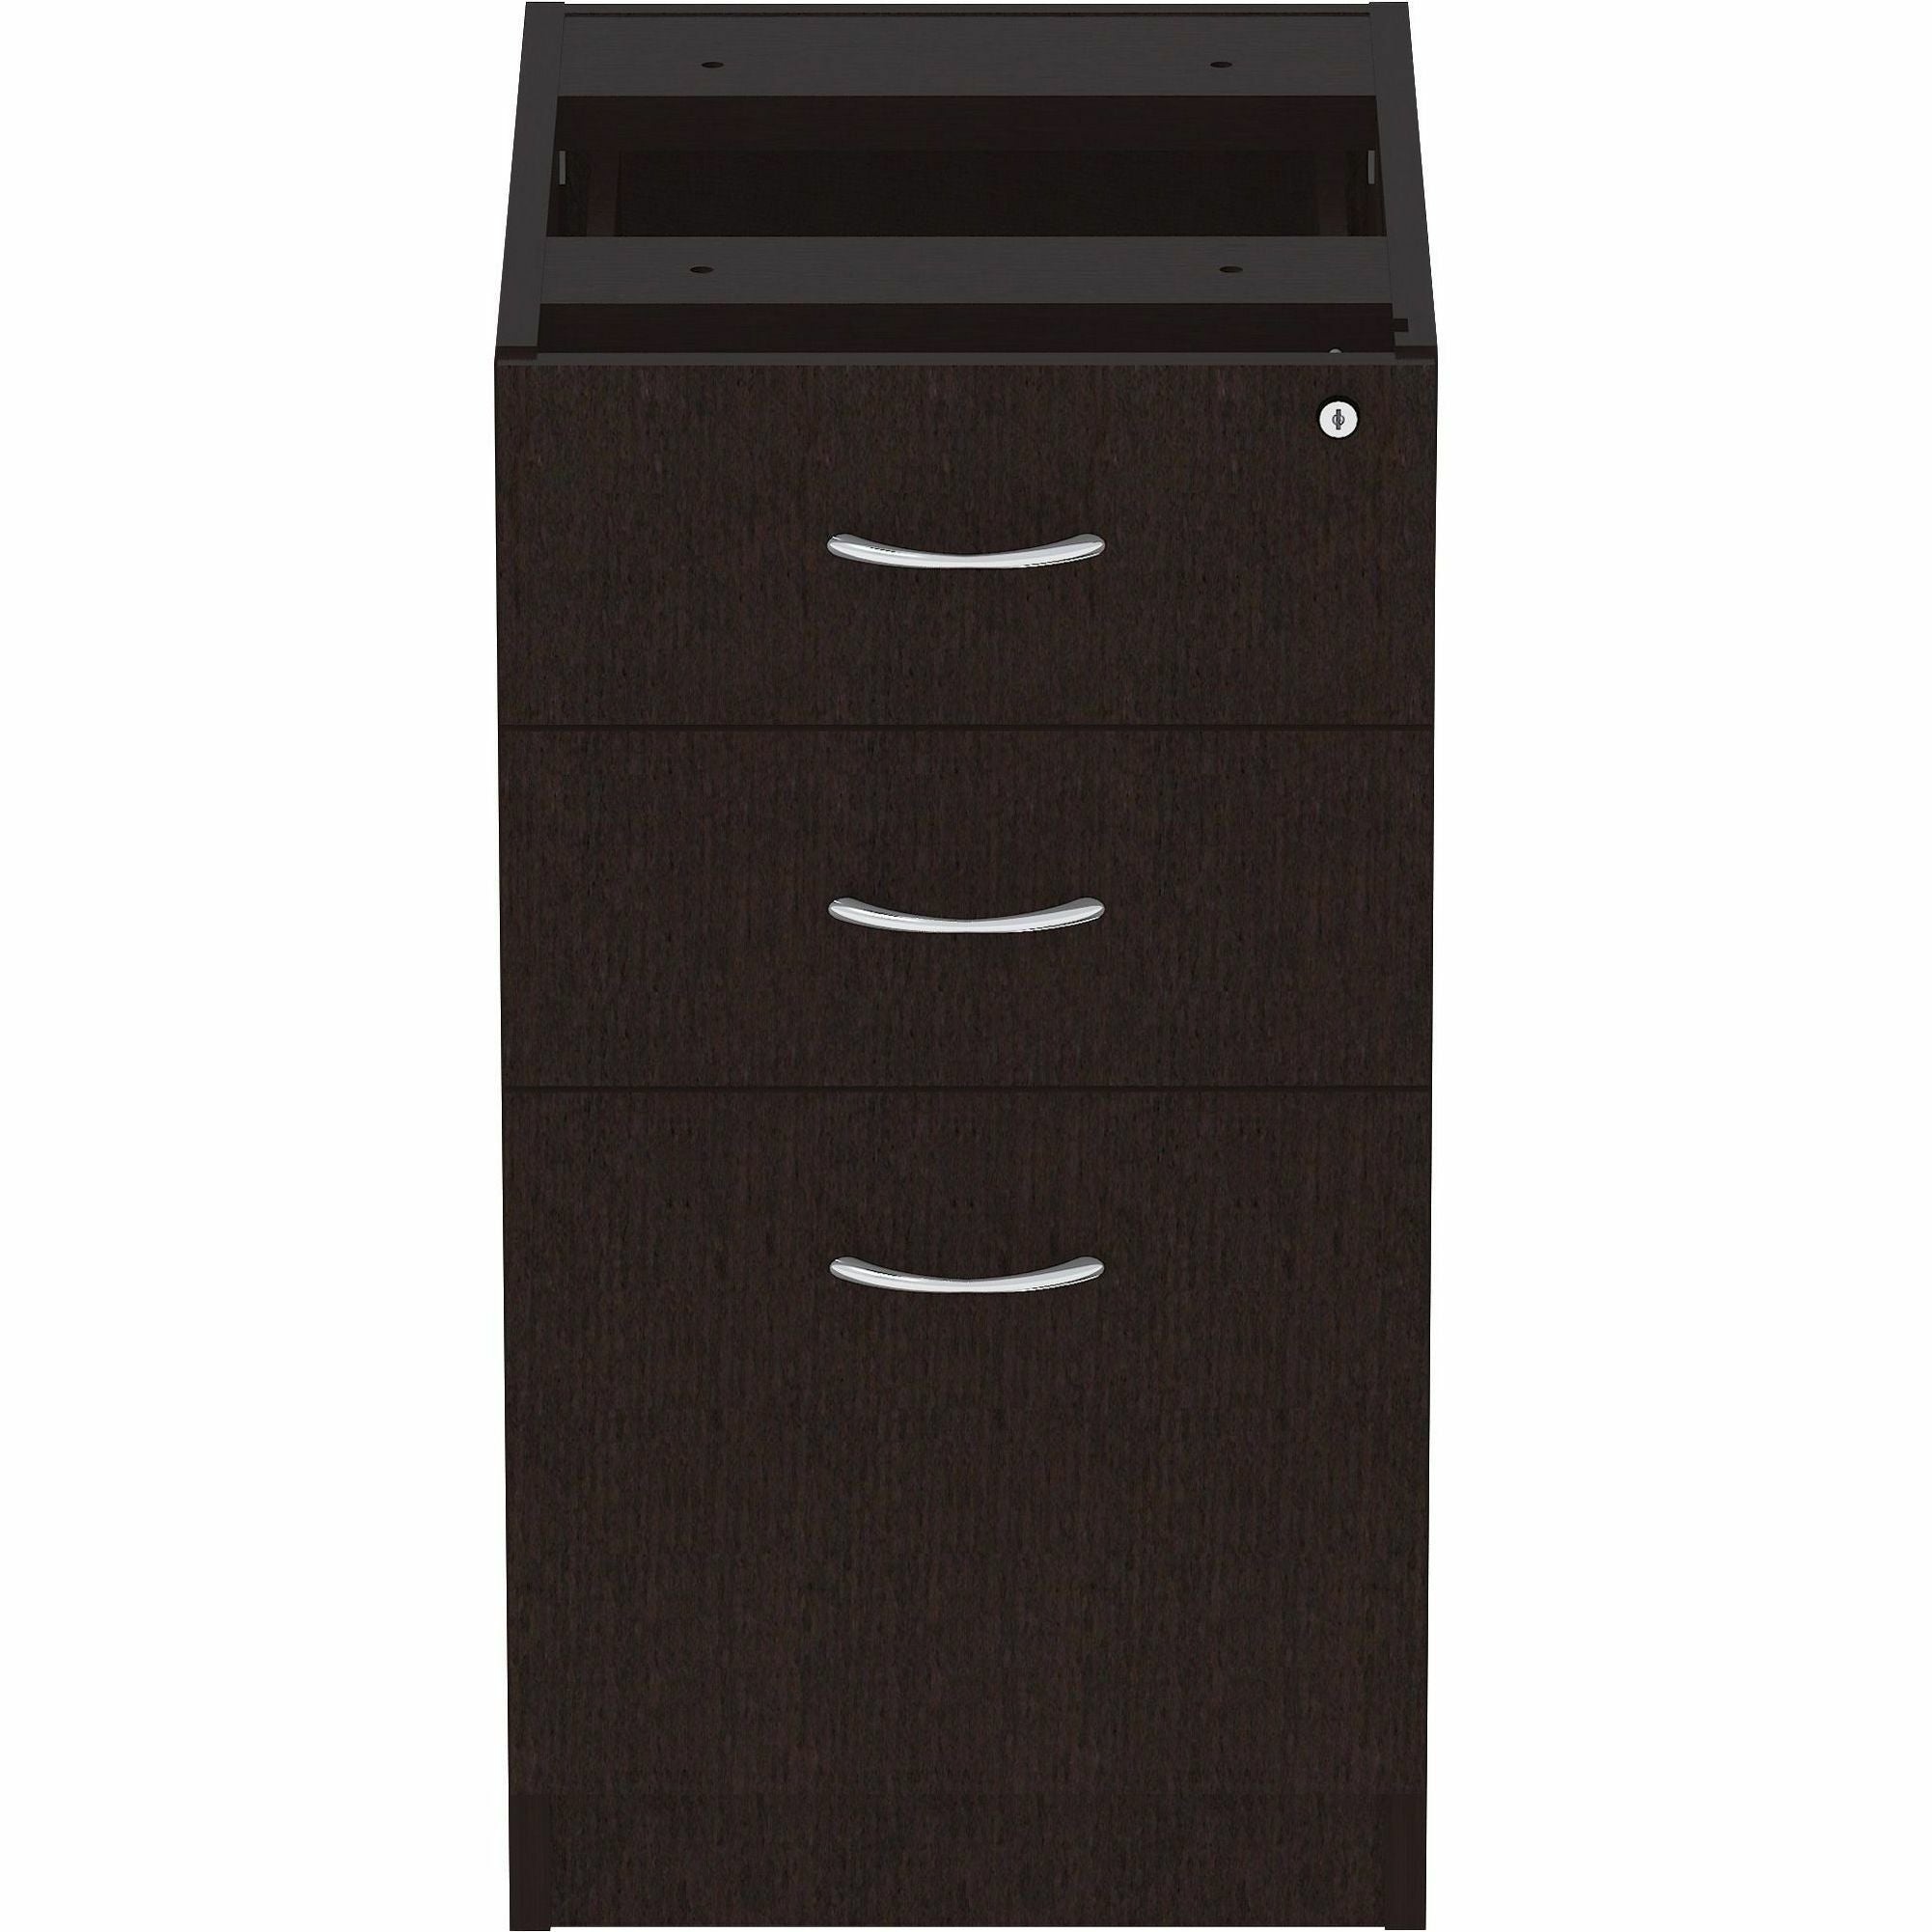 Lorell Essentials Series Box/Box/File Fixed File Cabinet - 16" x 22" x 28.3" Pedestal - Finish: Espresso, Silver Brush - 2